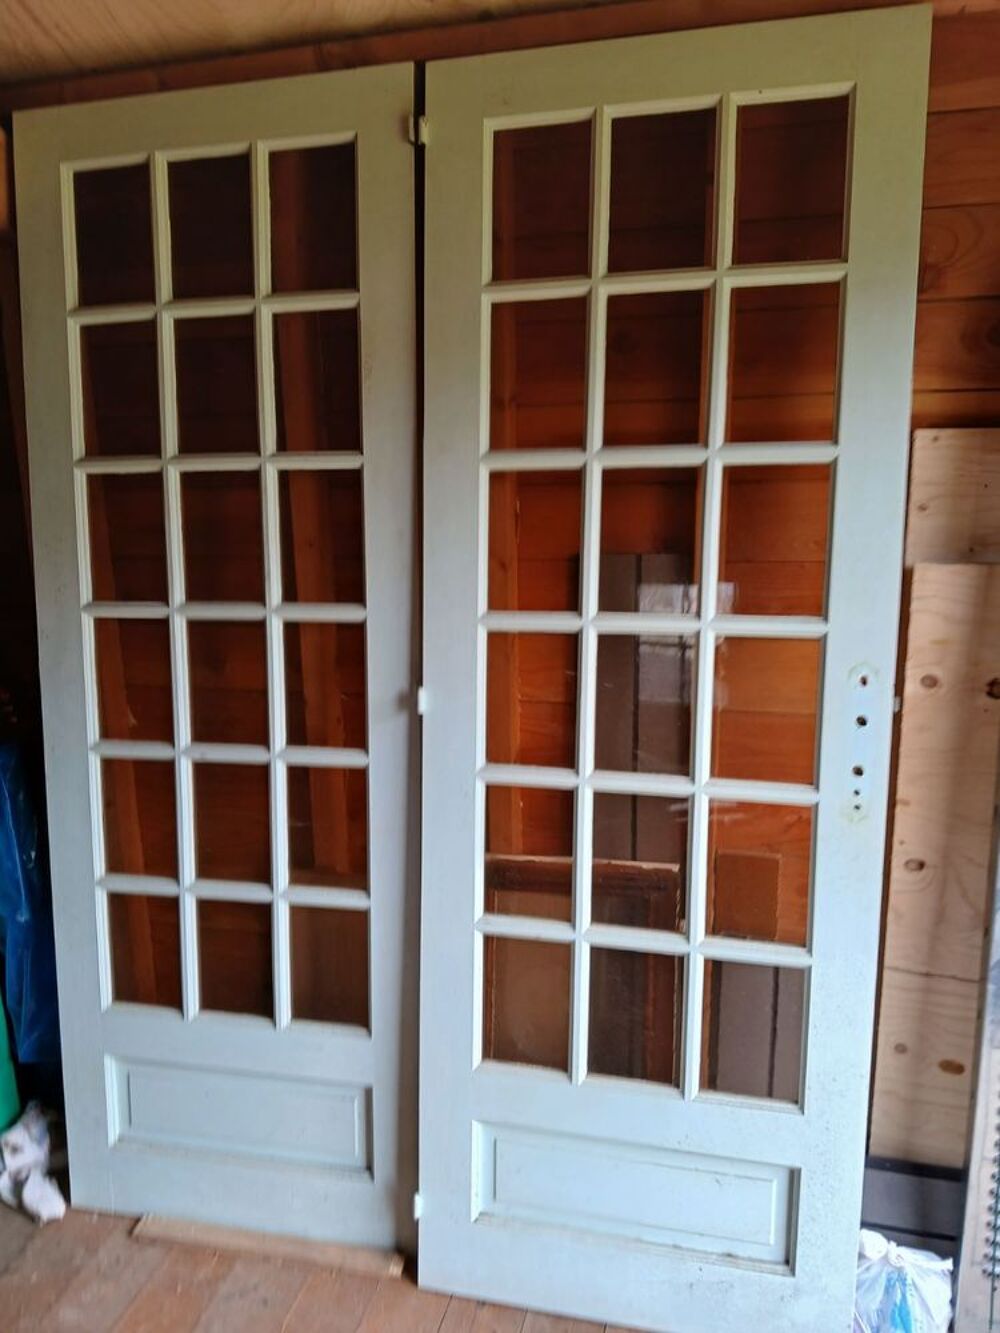 lot de portes en bois d int&eacute;rieur
Haut 2 m 07 et larg 74 cm
Bricolage